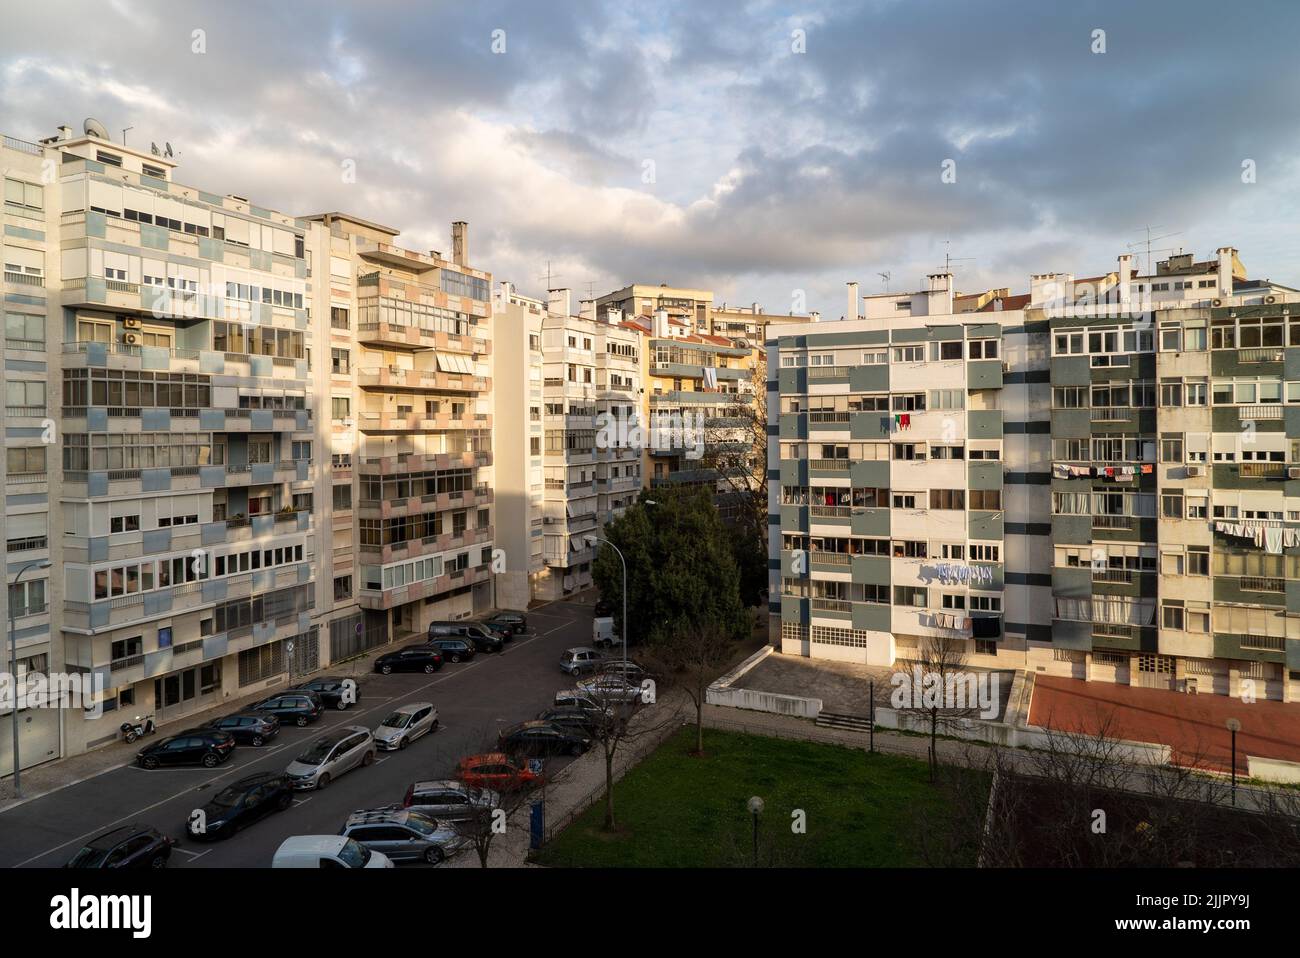 Eine lange Exposition von Wohngebäuden gegen einen blauen bewölkten Himmel an einem sonnigen Tag, Lissabon, Portugal Stockfoto